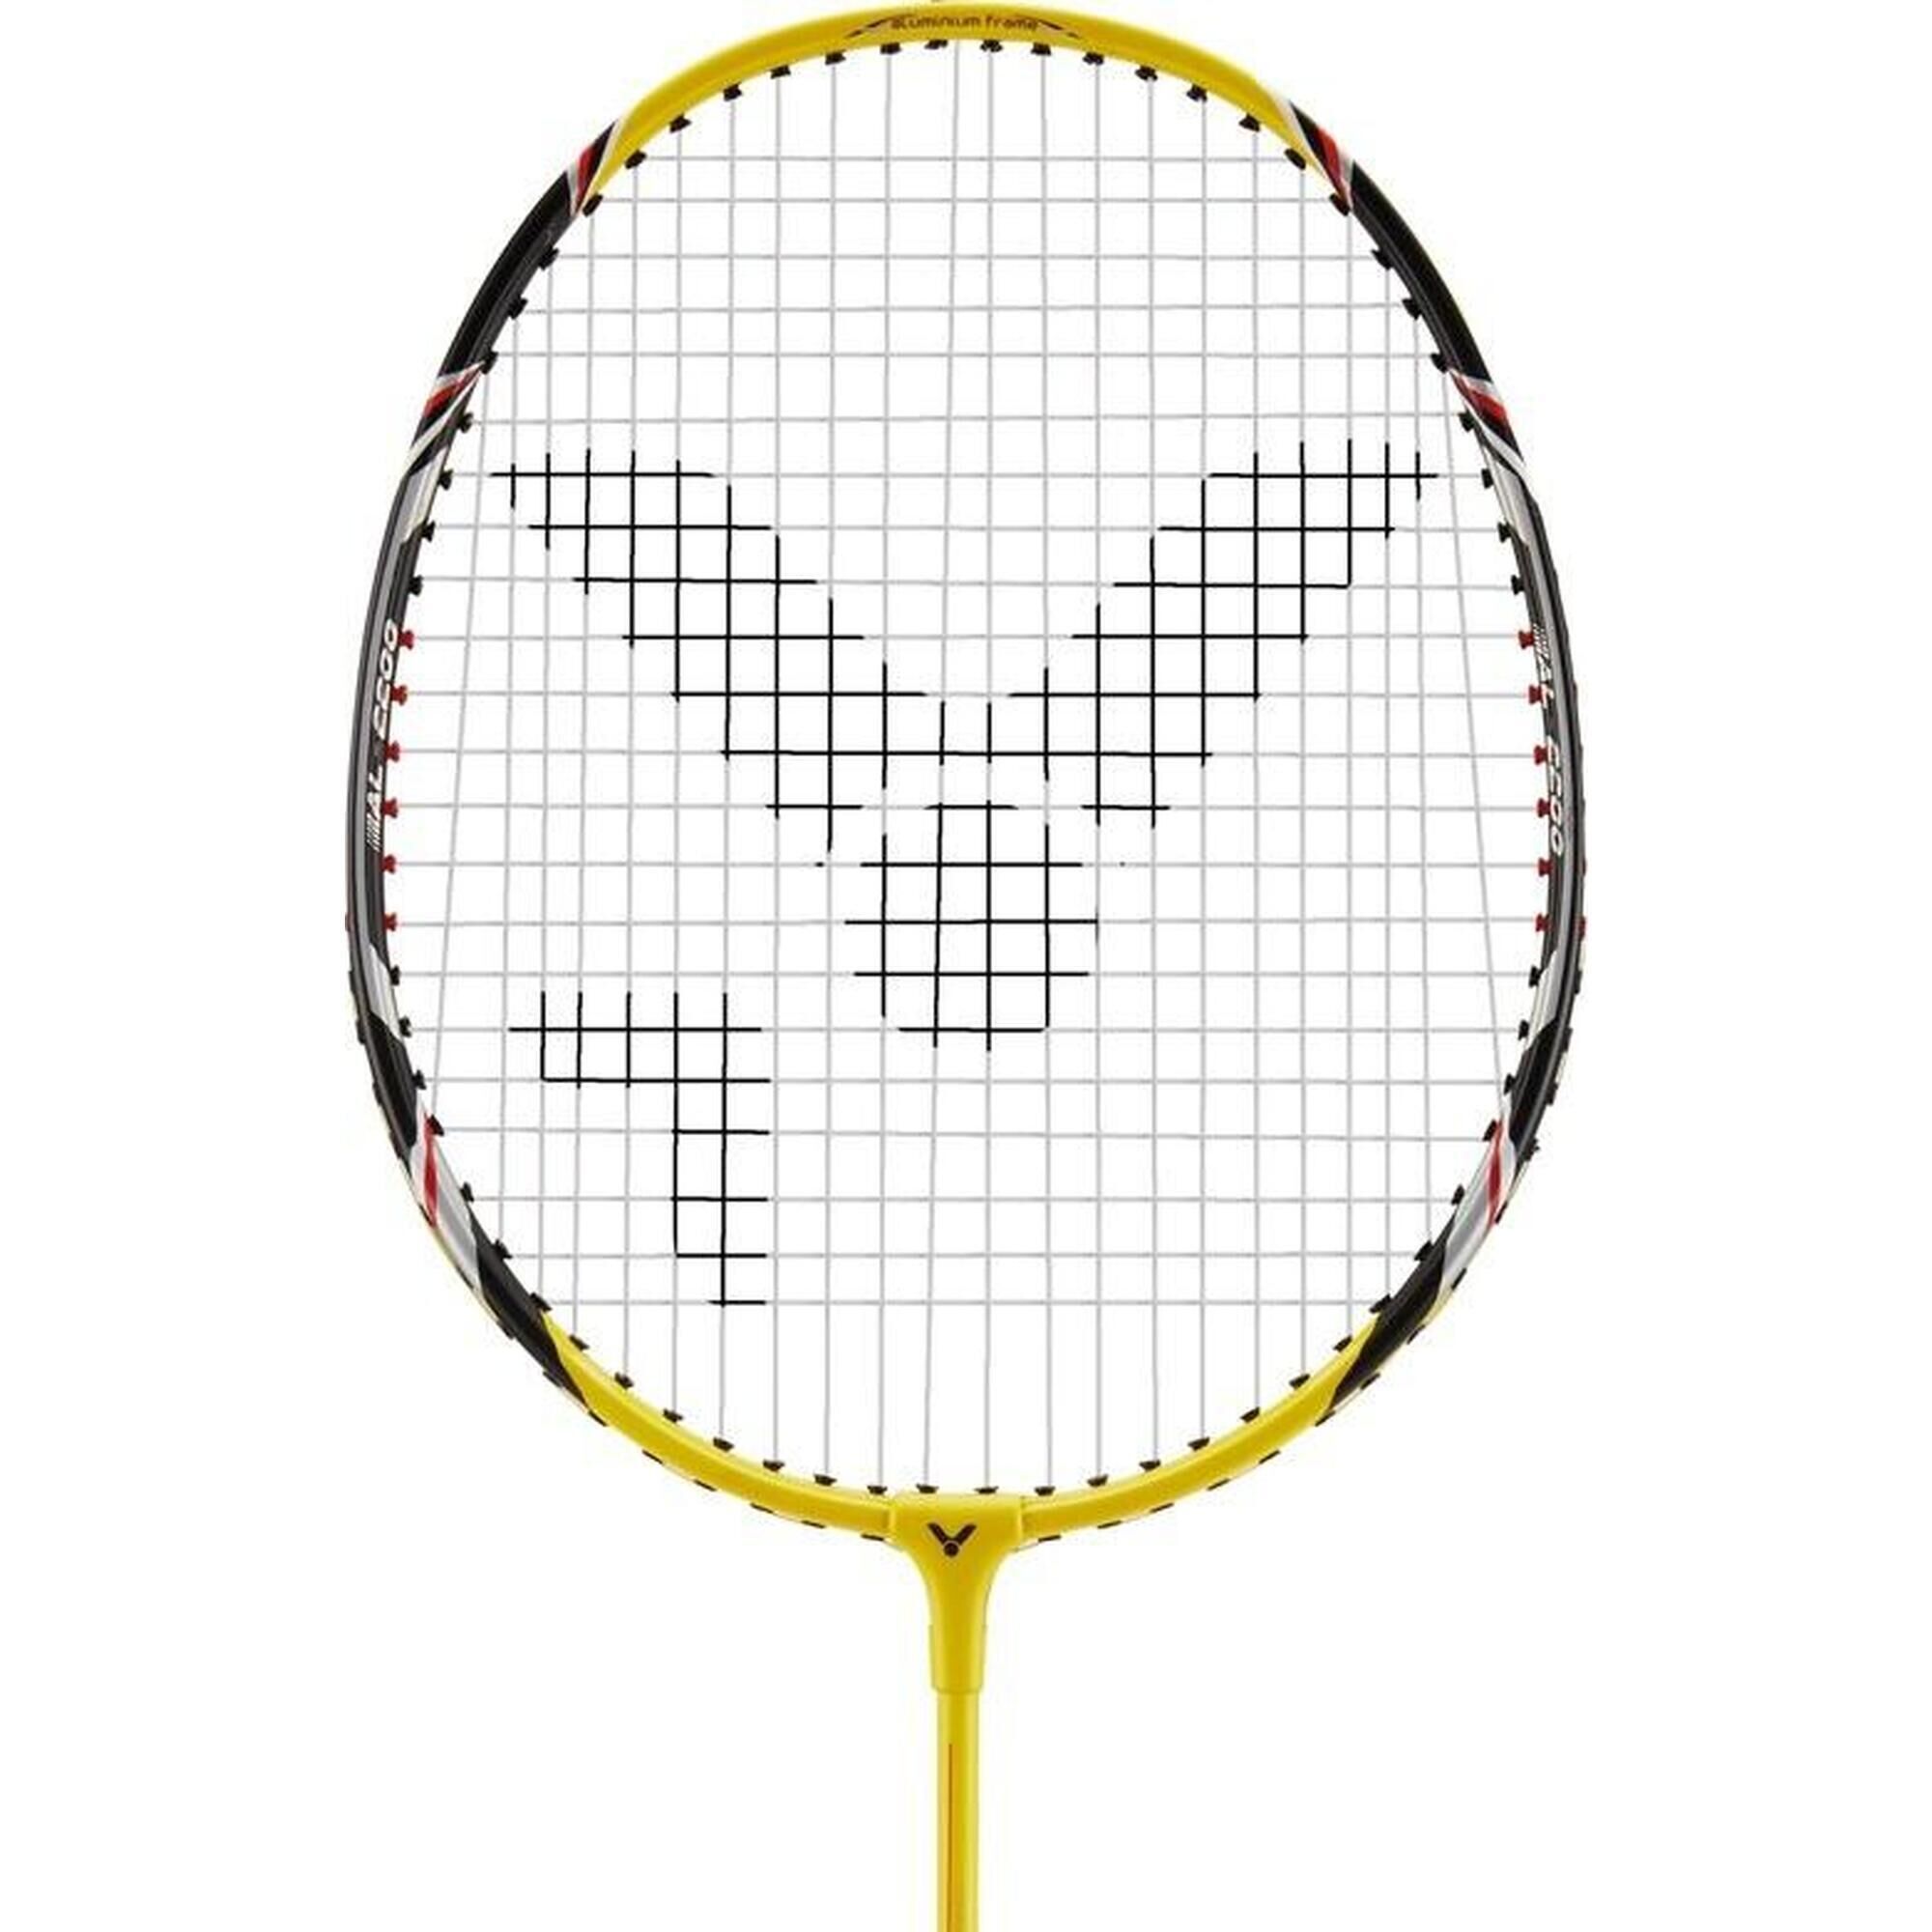 VICTOR AL-2200 Badminton Racket